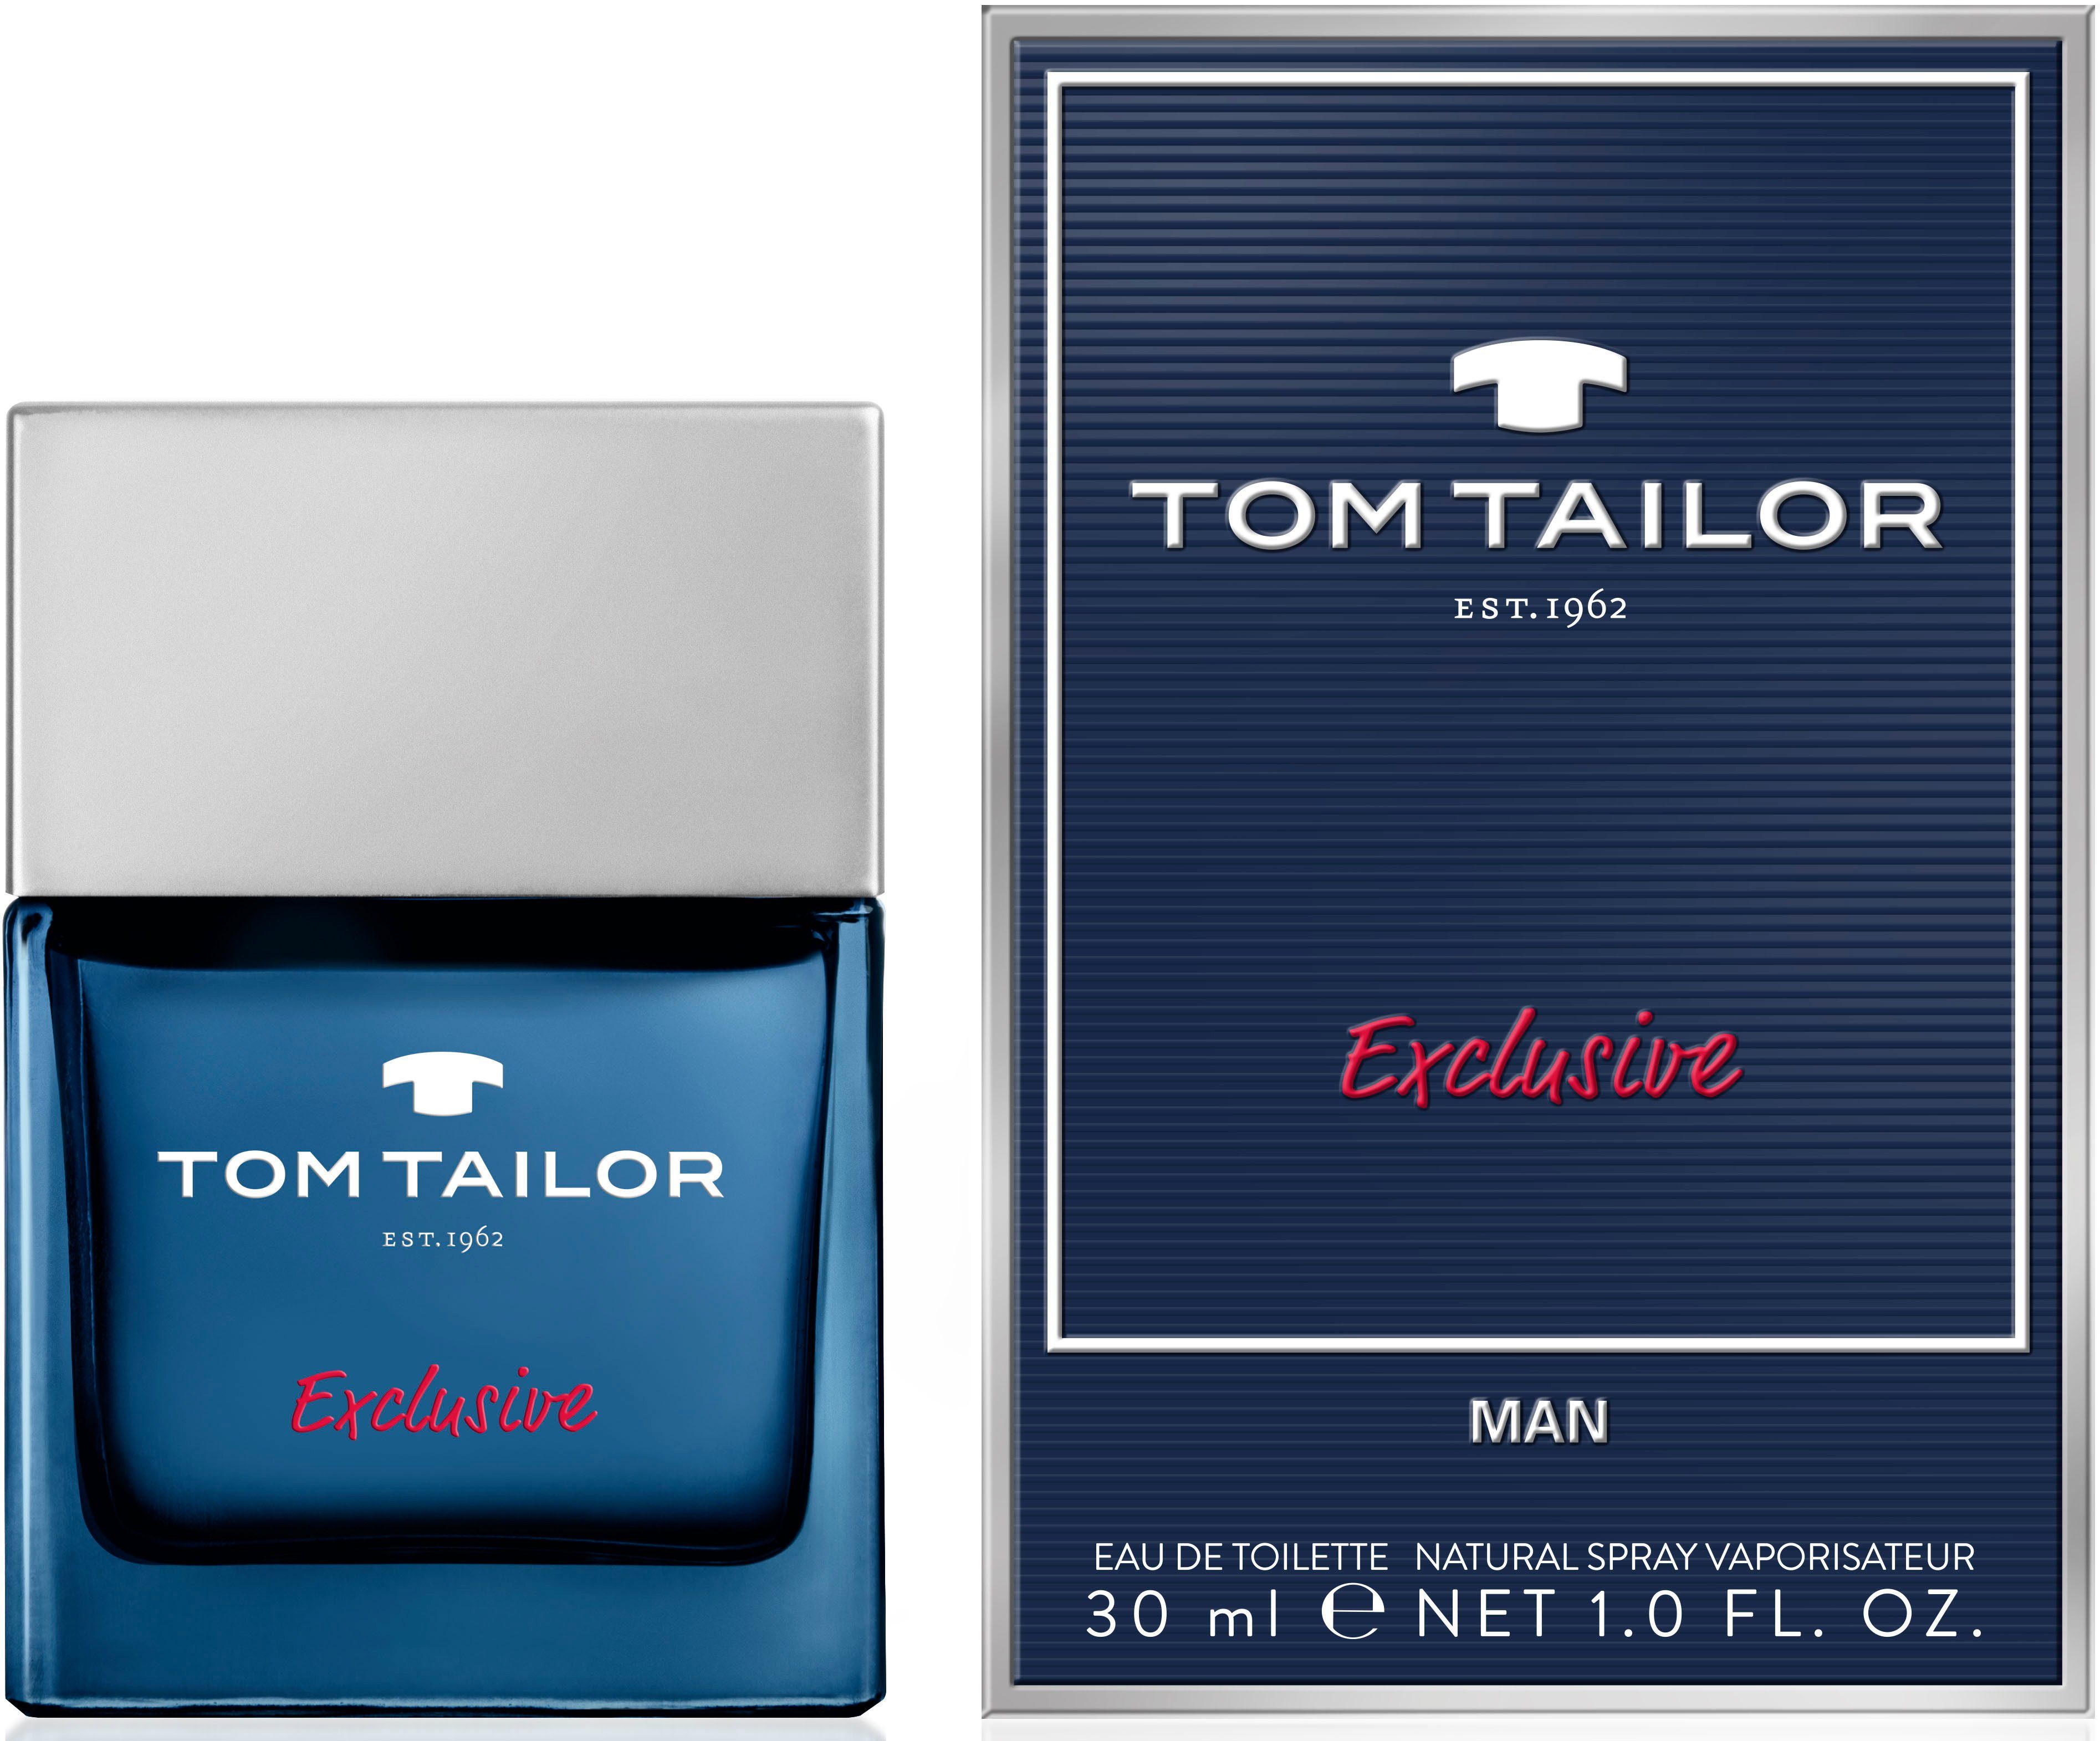 Tailor TAILOR Man Eau Toilette Tom de Exclusive TOM